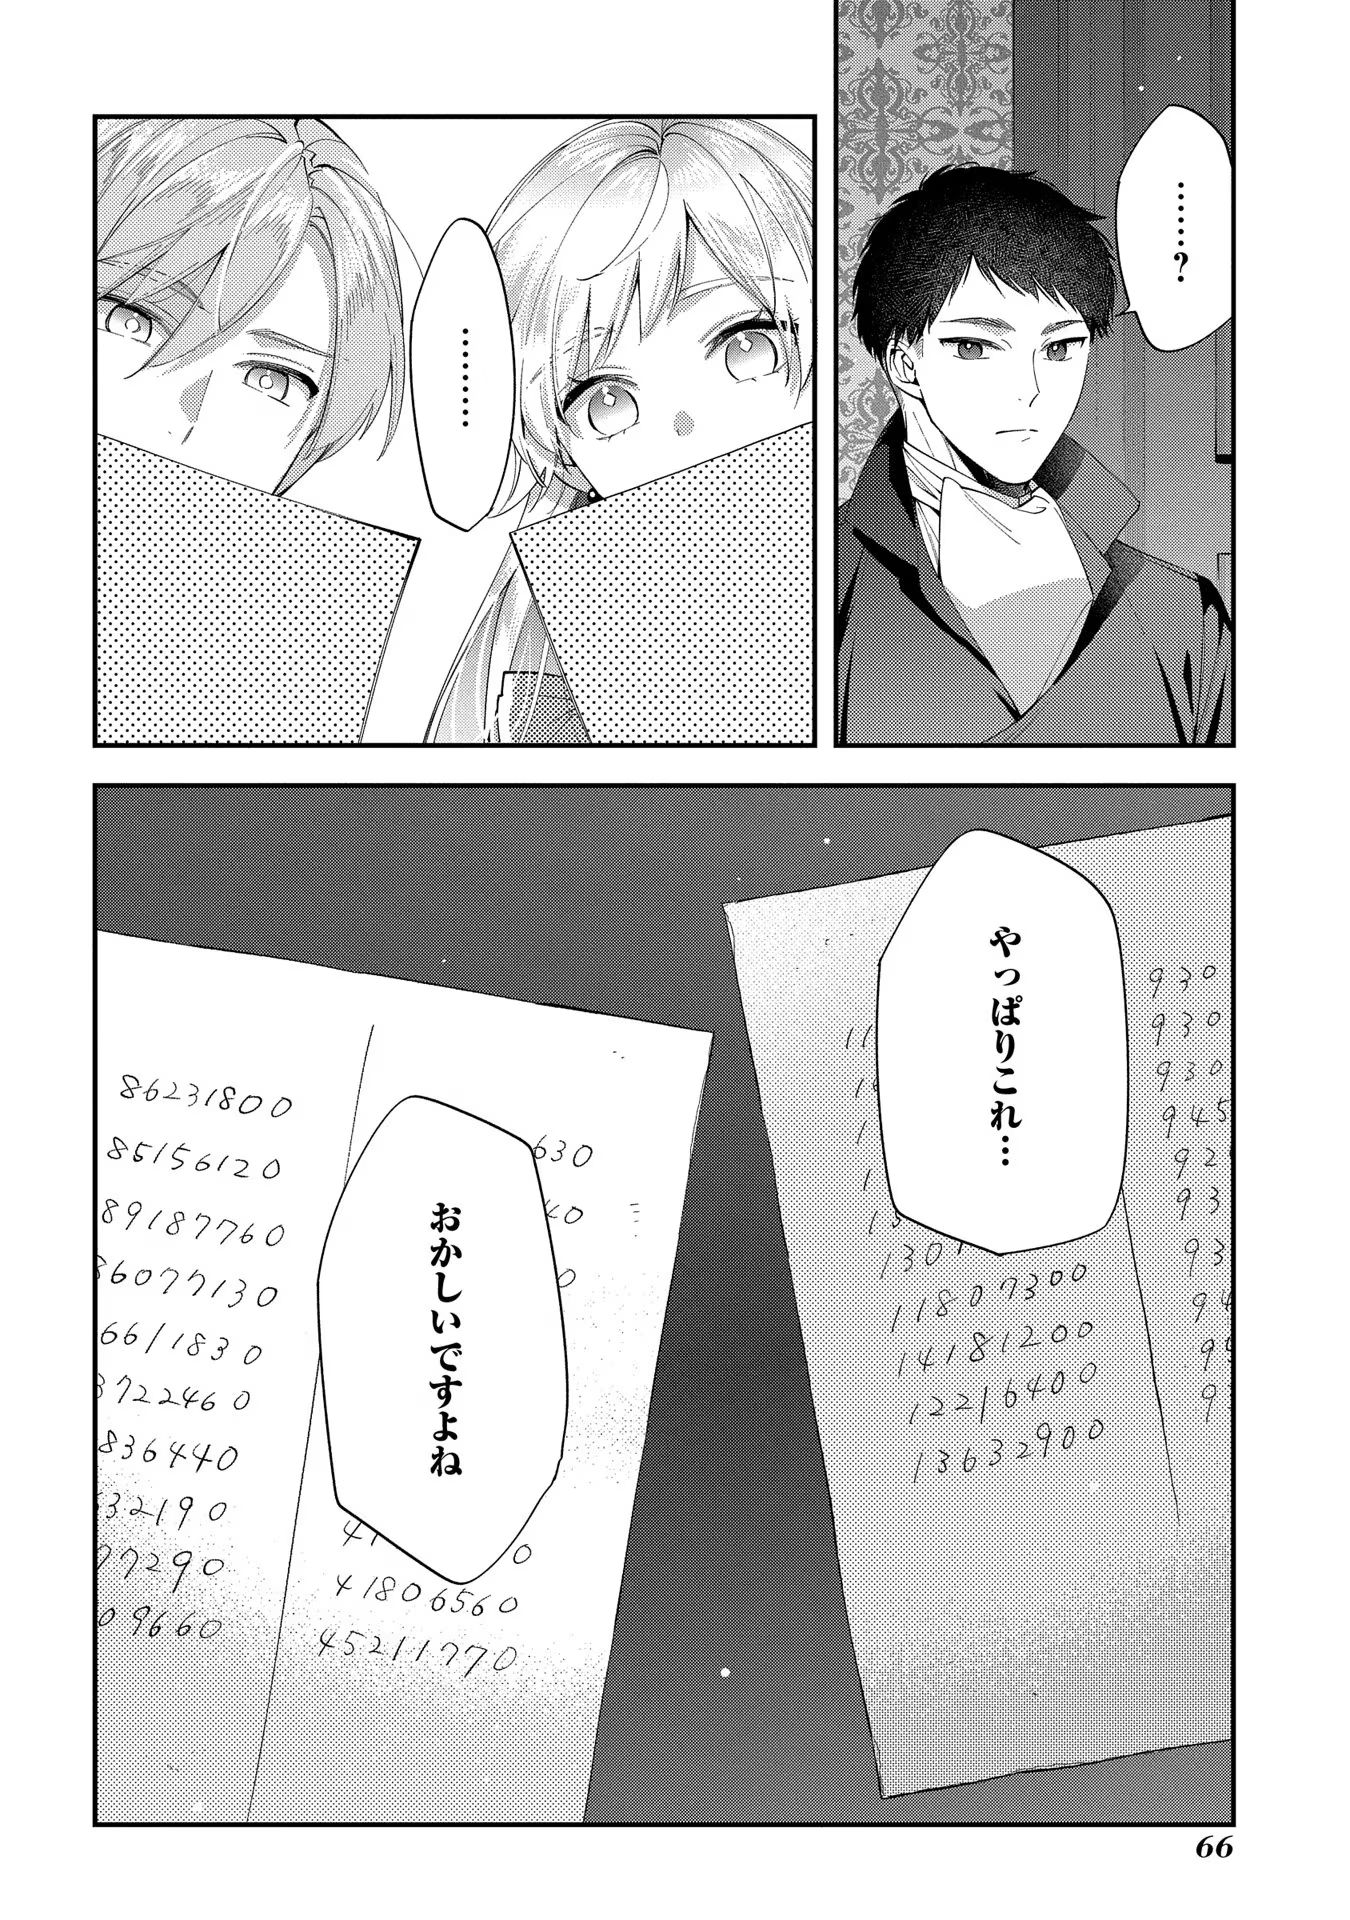 Outaishi ni Konyaku Hakisareta no de, Mou Baka no Furi wa Yameyou to Omoimasu - Chapter 12 - Page 30